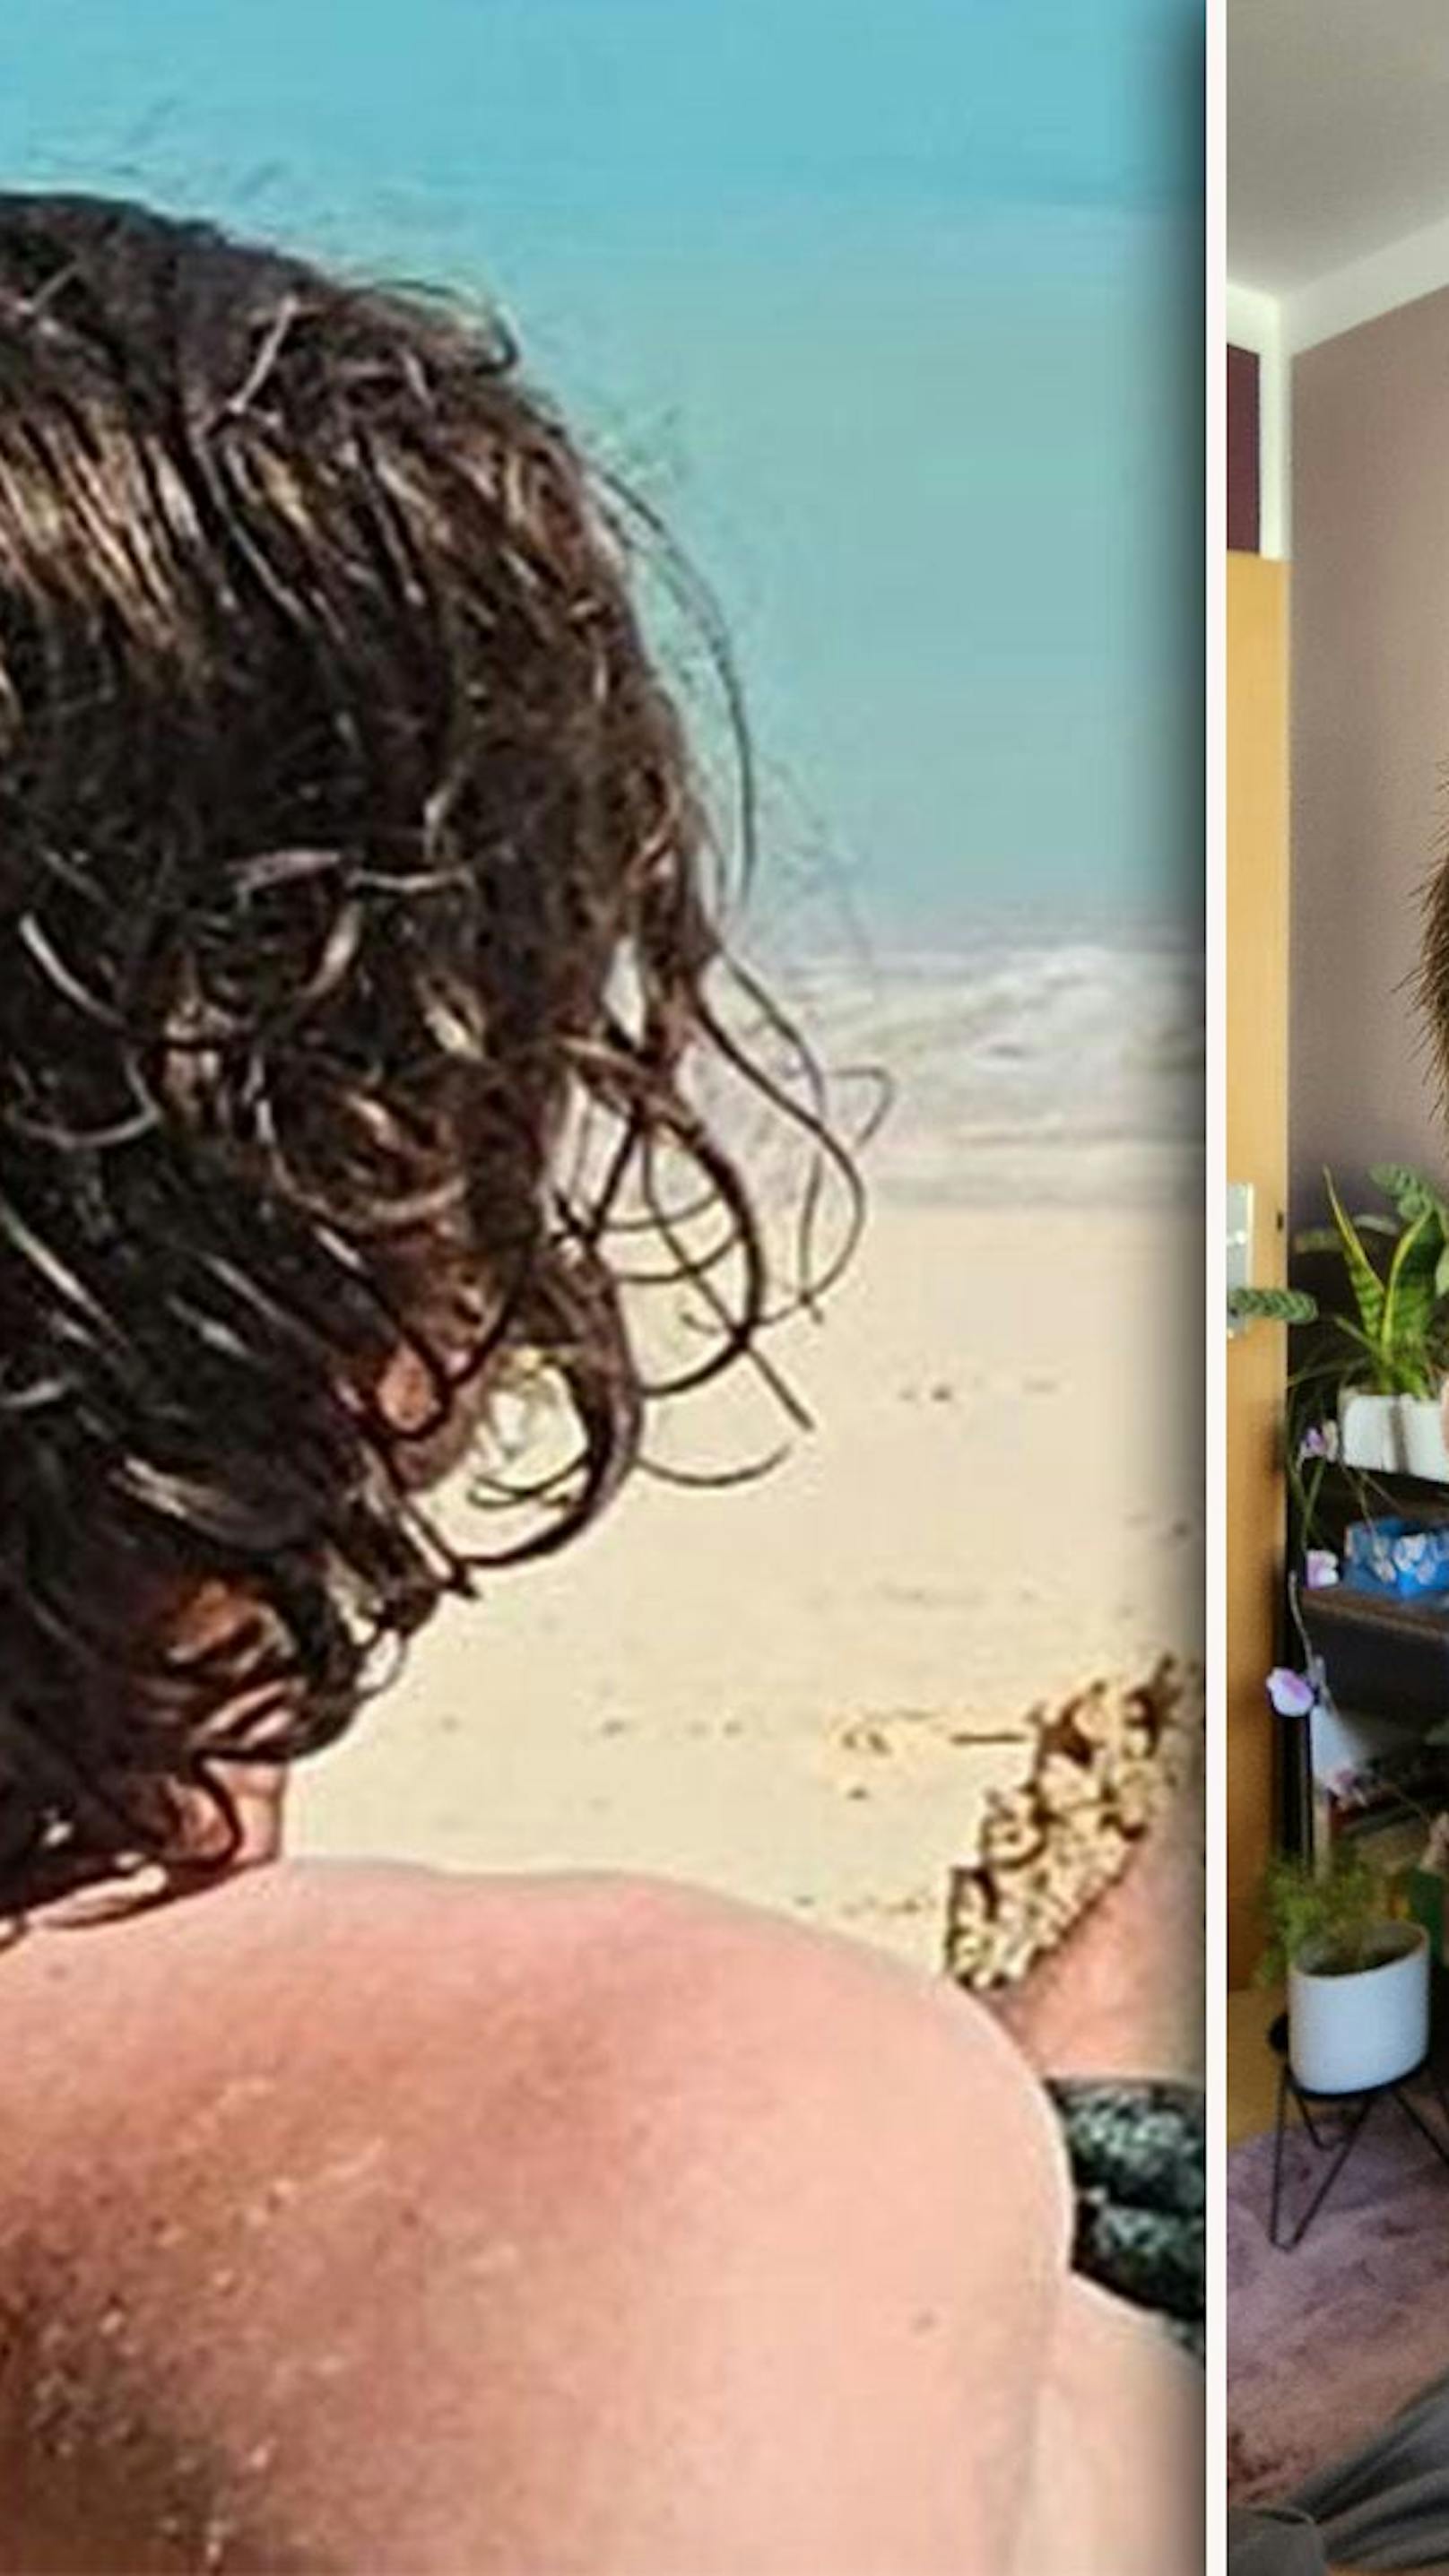 Friseur "ruiniert" Mann das Haar, Freundin ruft Polizei